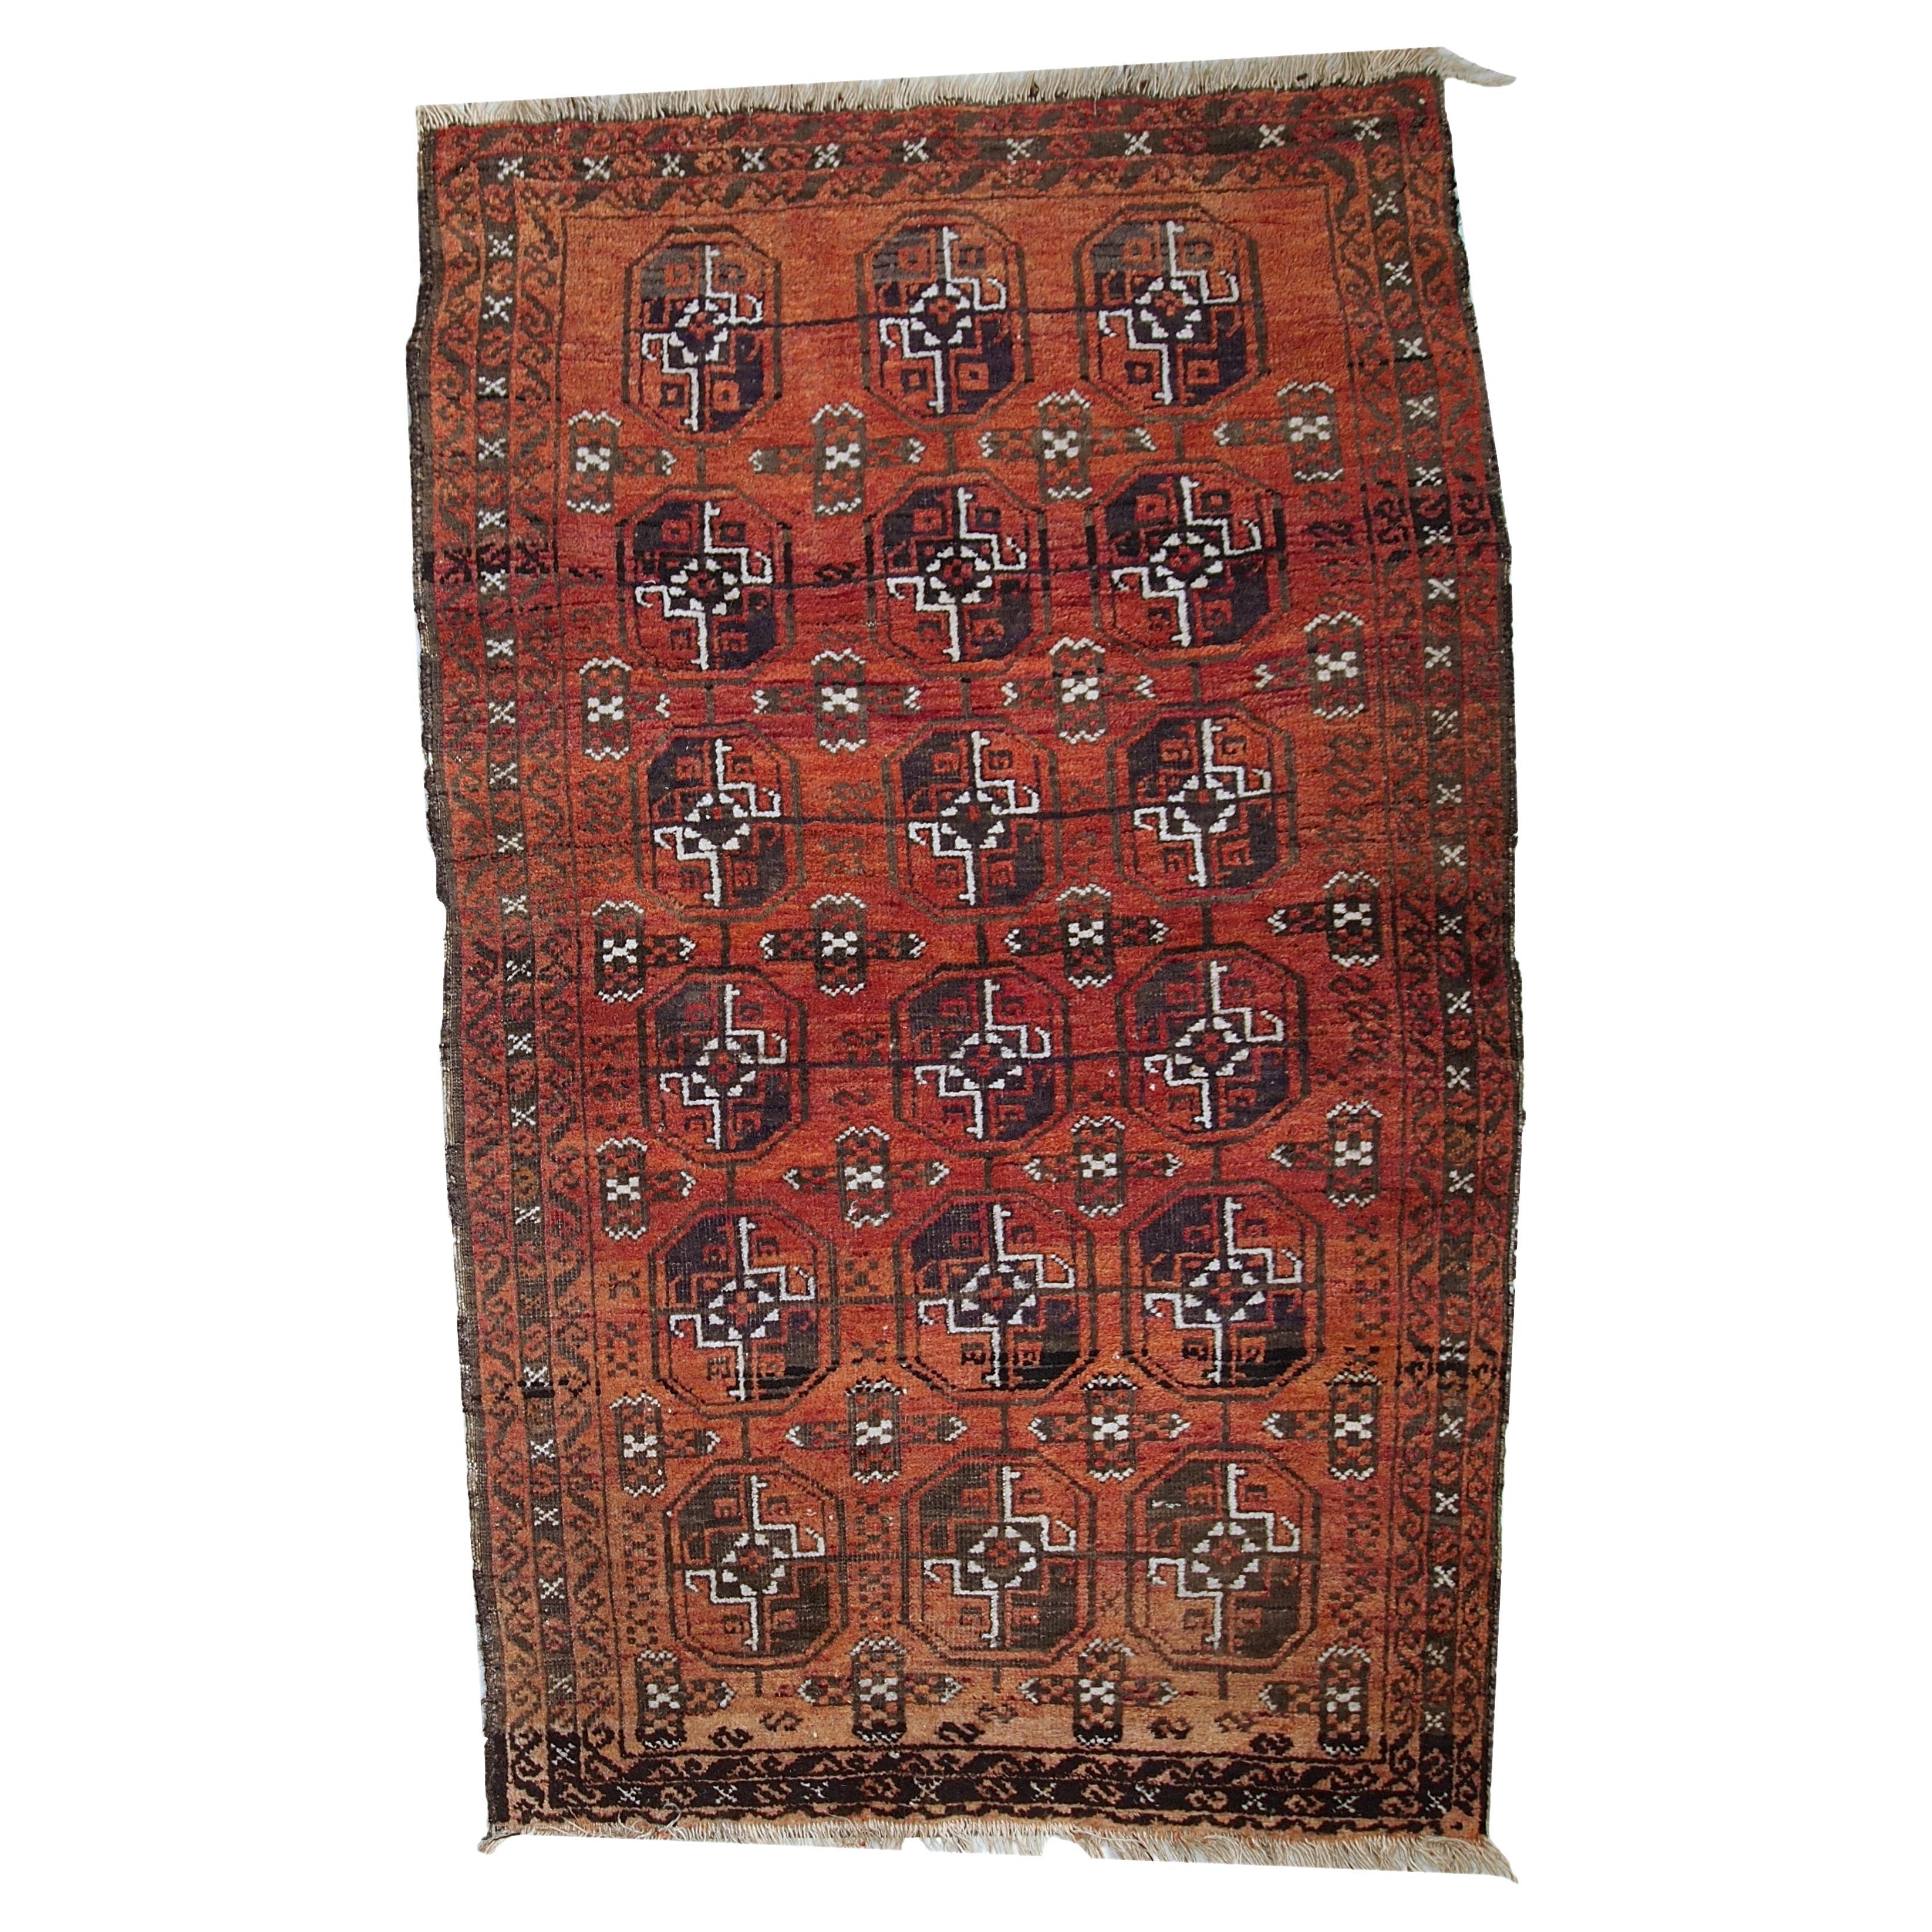 Tapis de baluch afghan ancien fait à la main, années 1900, 1c381